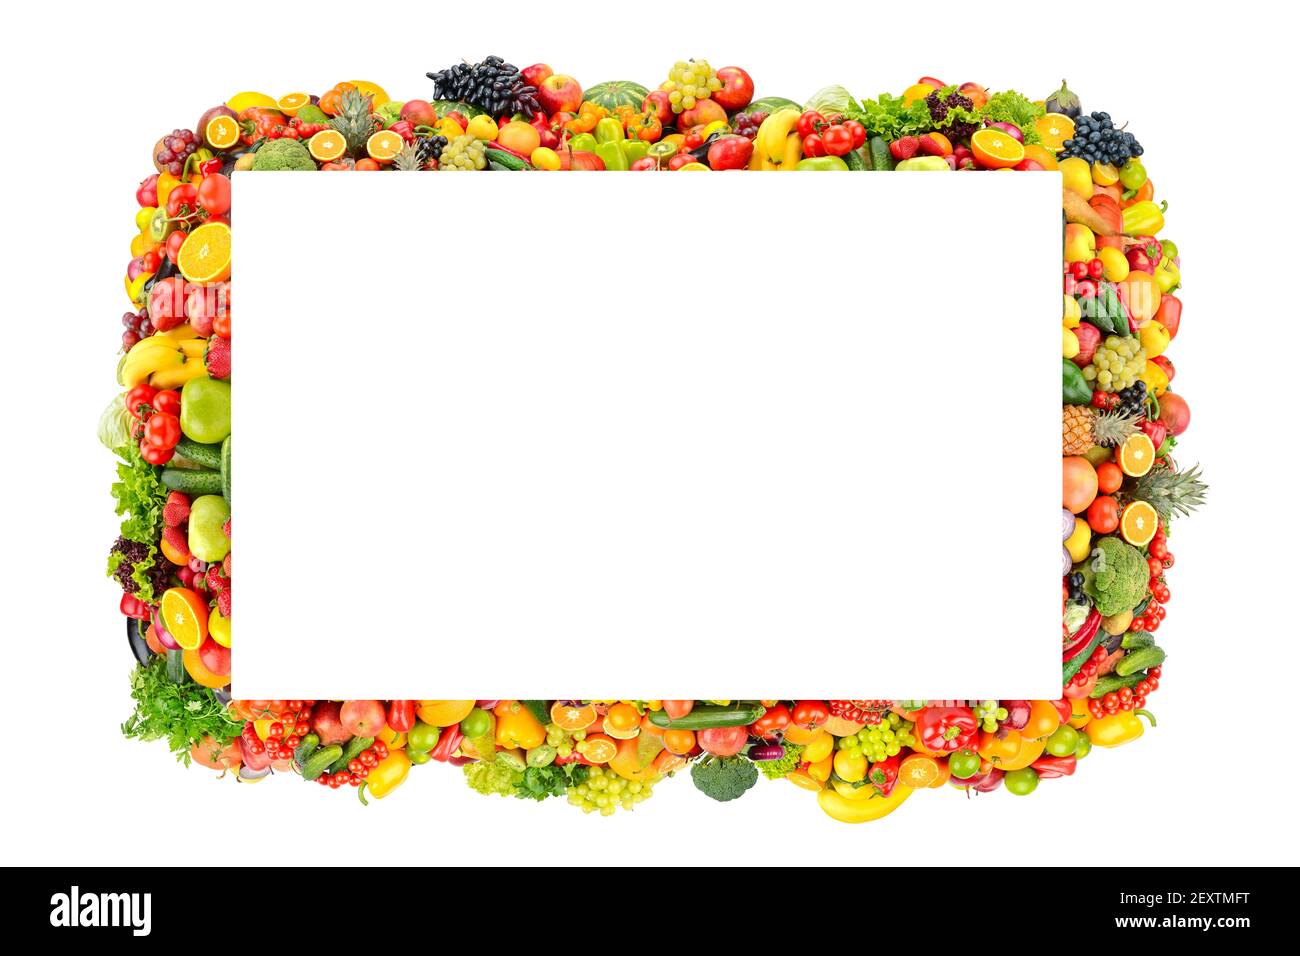 Bella cornice frutta, verdure, bacche isolato su sfondo bianco Foto Stock